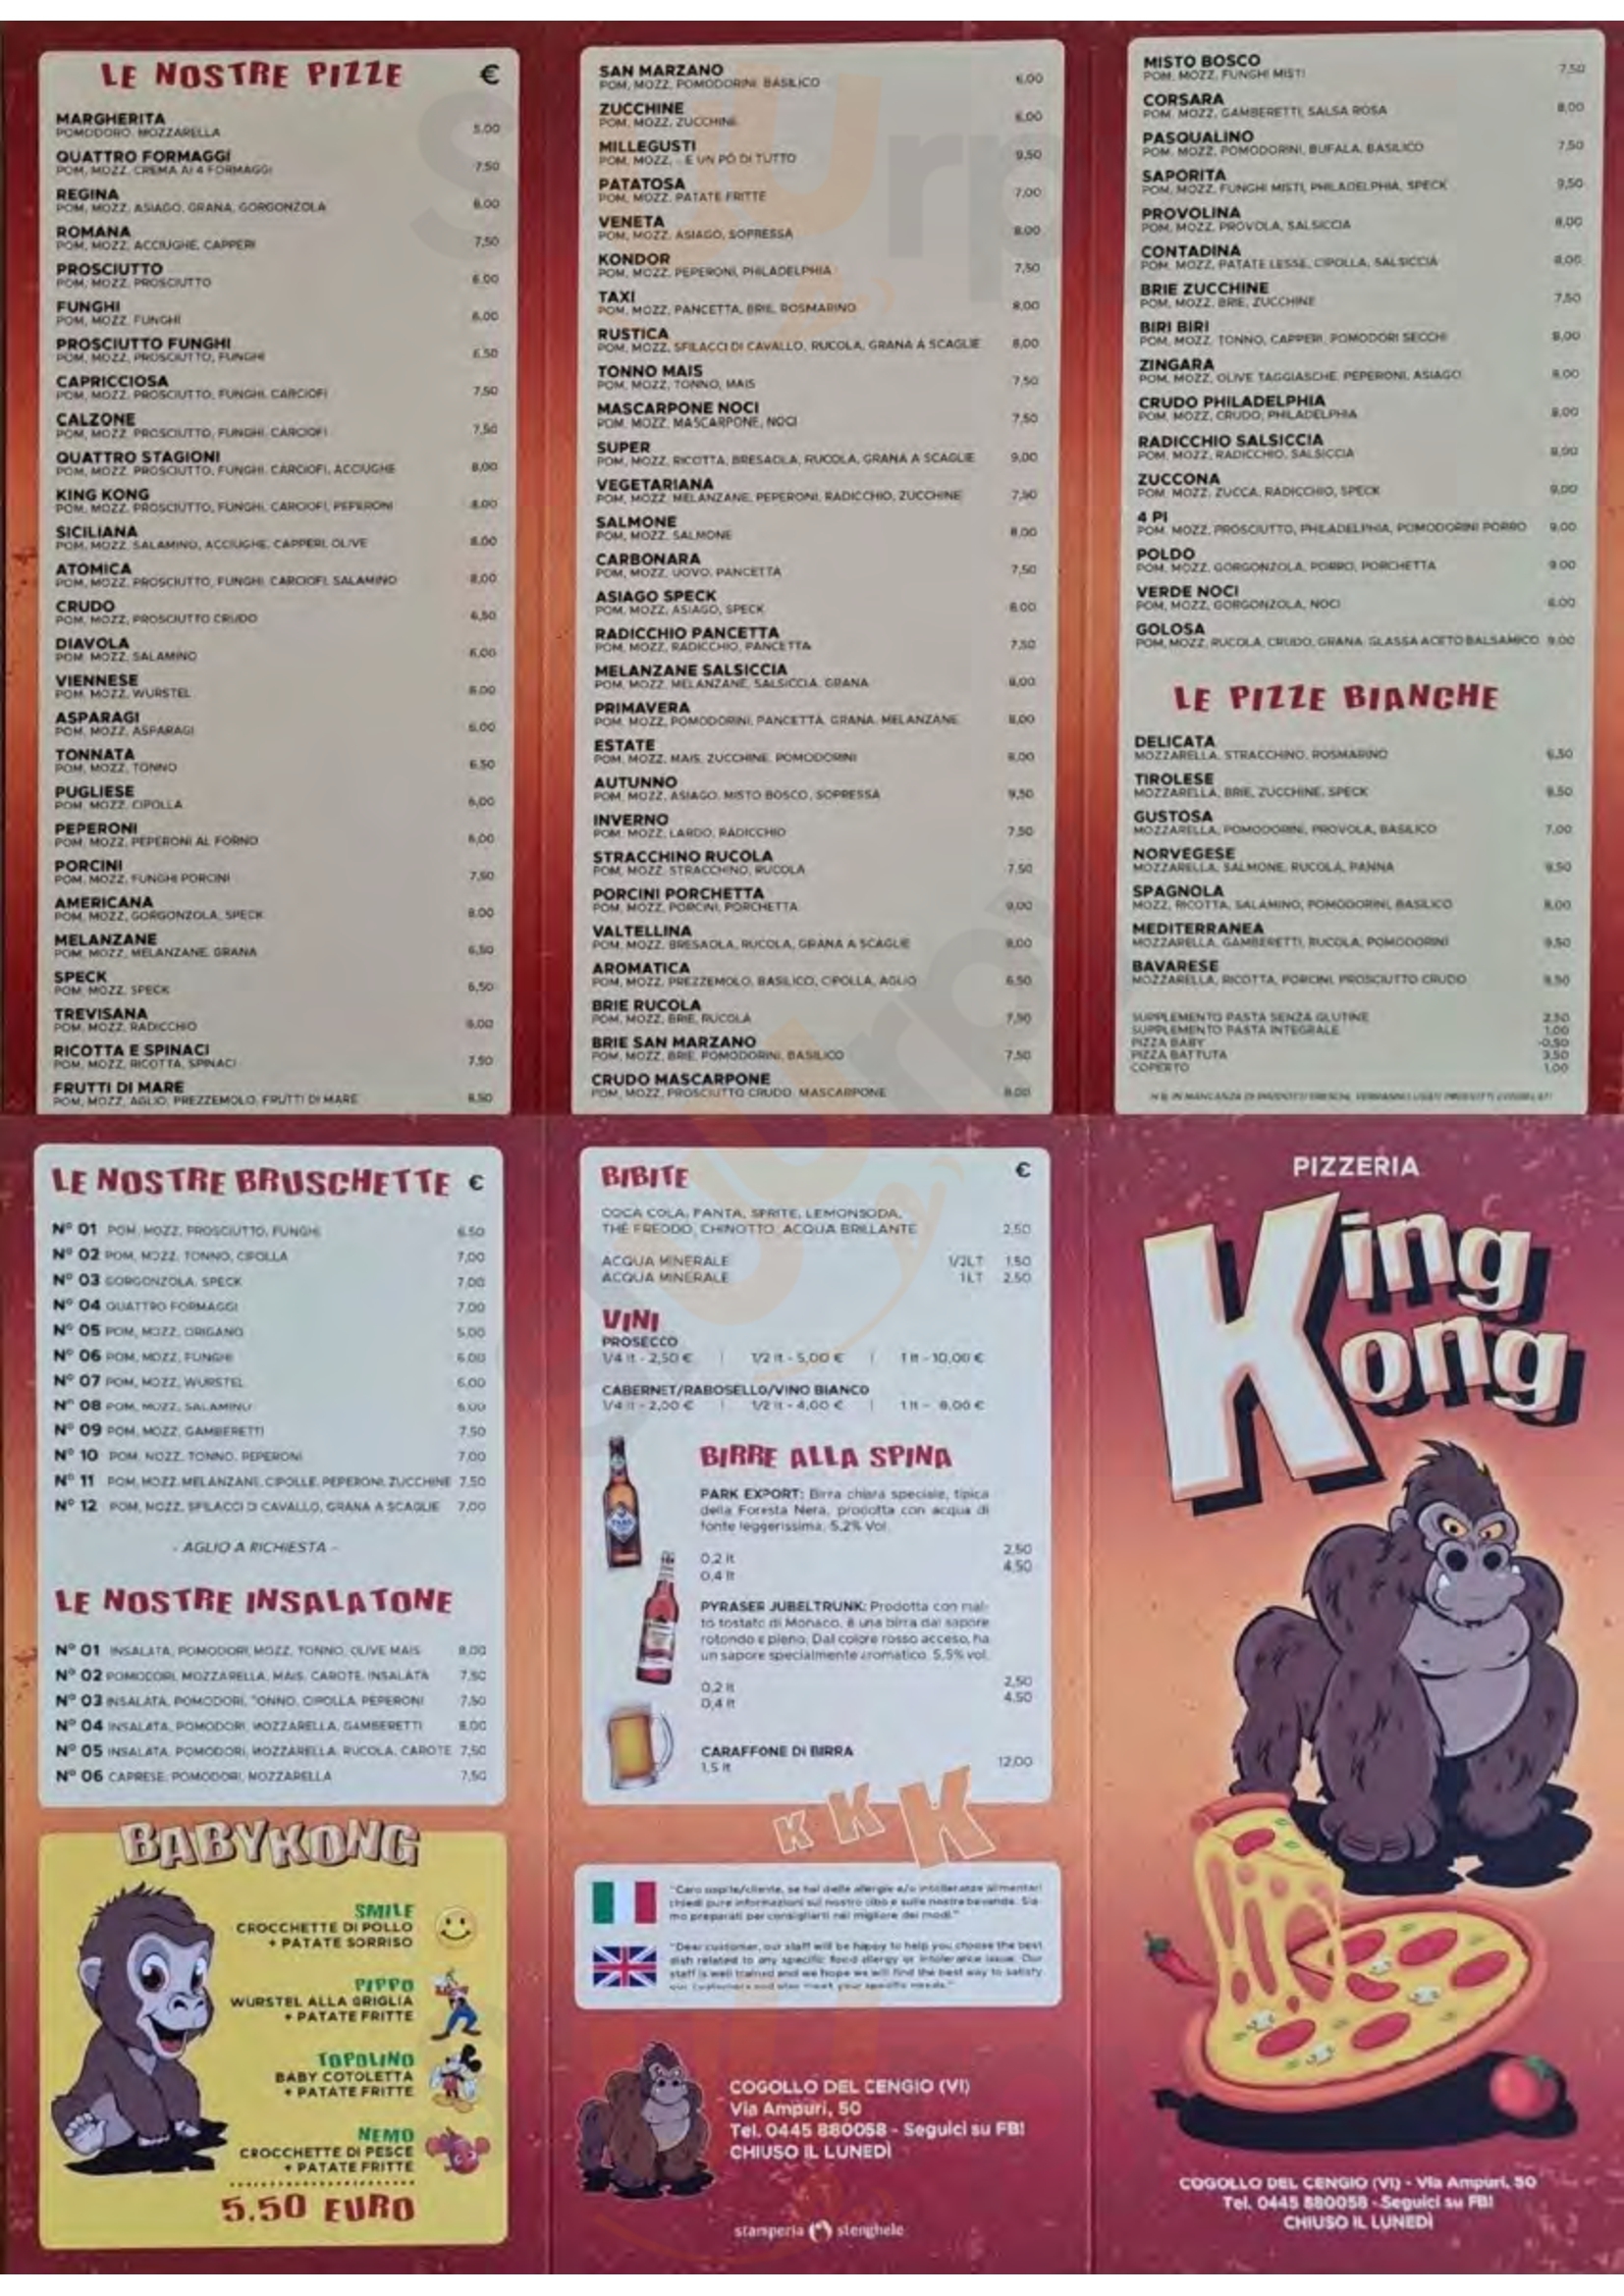 Pizzeria King Kong Cogollo del Cengio menù 1 pagina